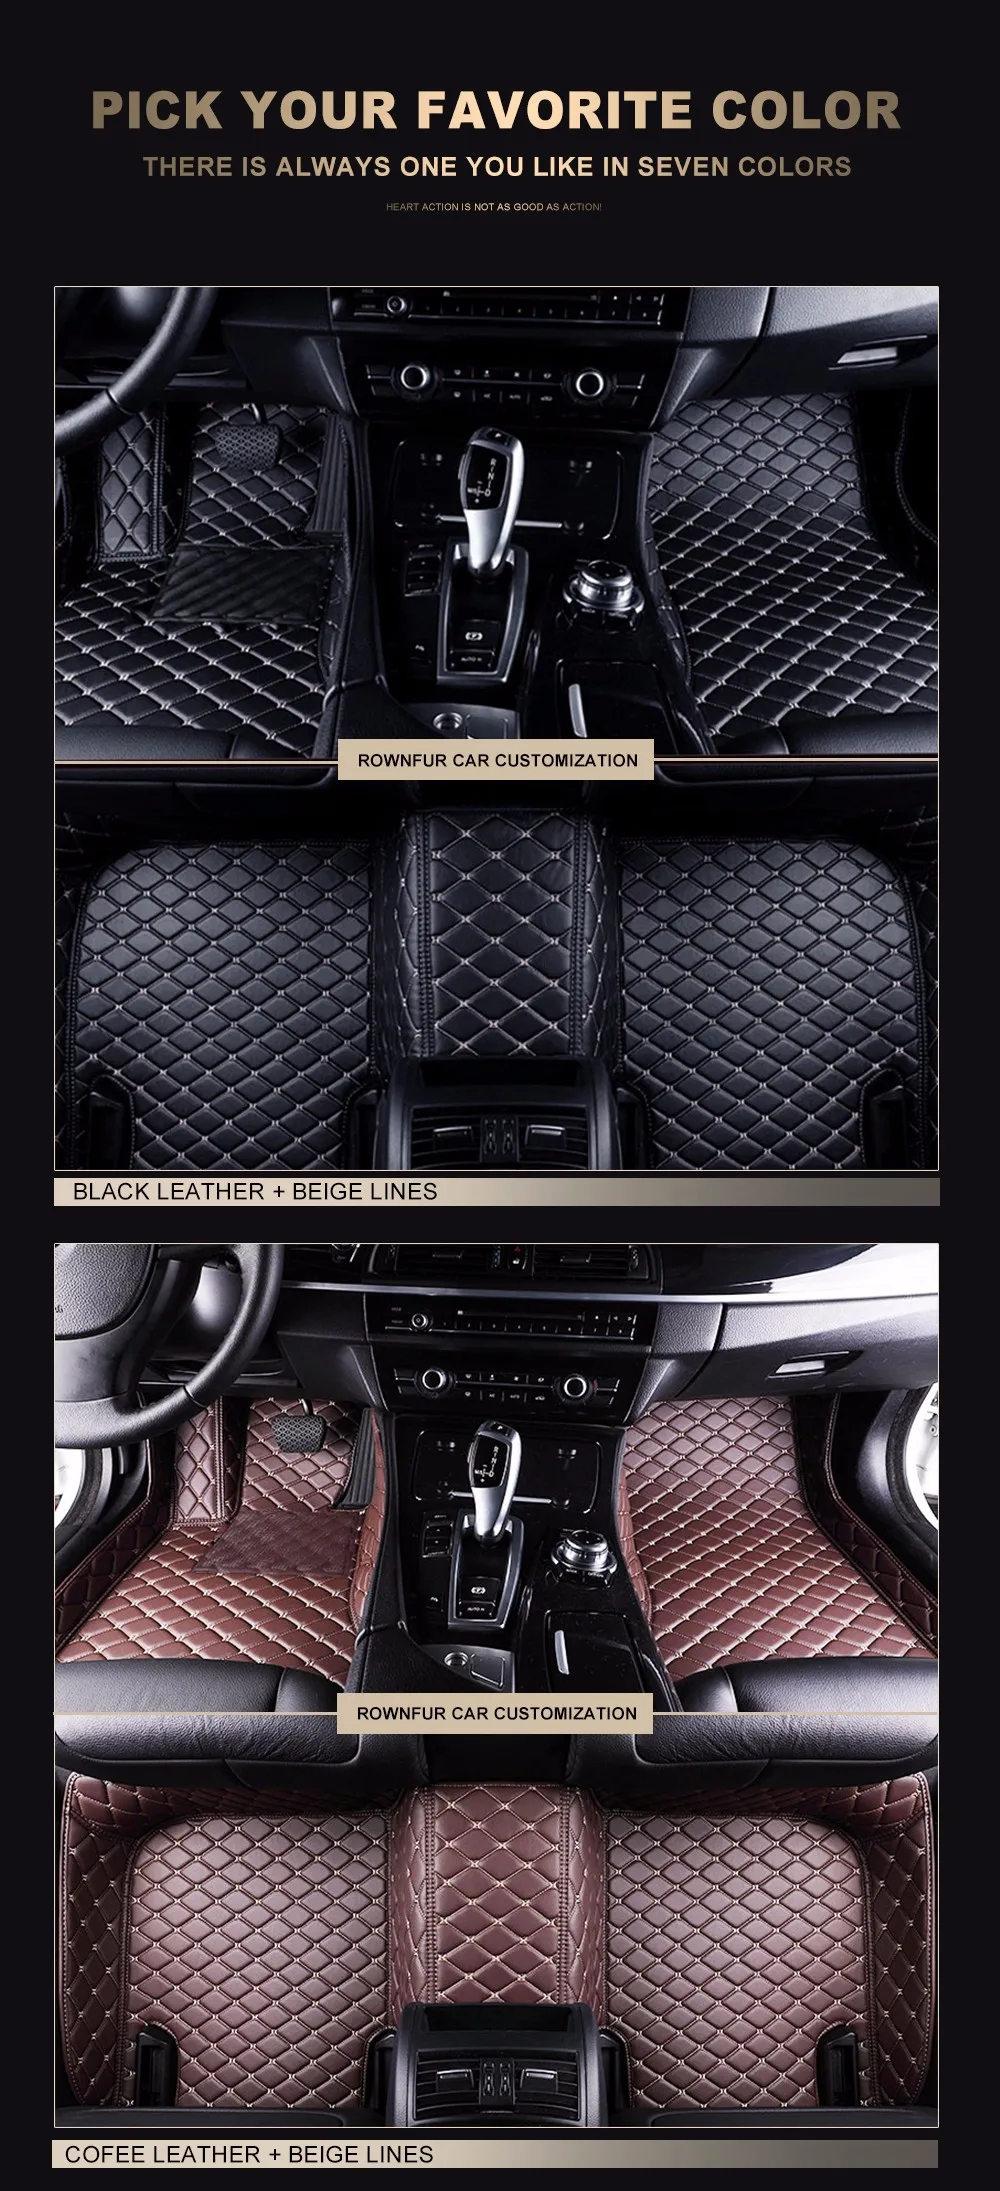 Rownfur автомобиля Коврики для Volkswagen Touareg защитить автомобиль чистке Водонепроницаемый кожа Коврики авто интерьер автомобиля Ковры Коврики